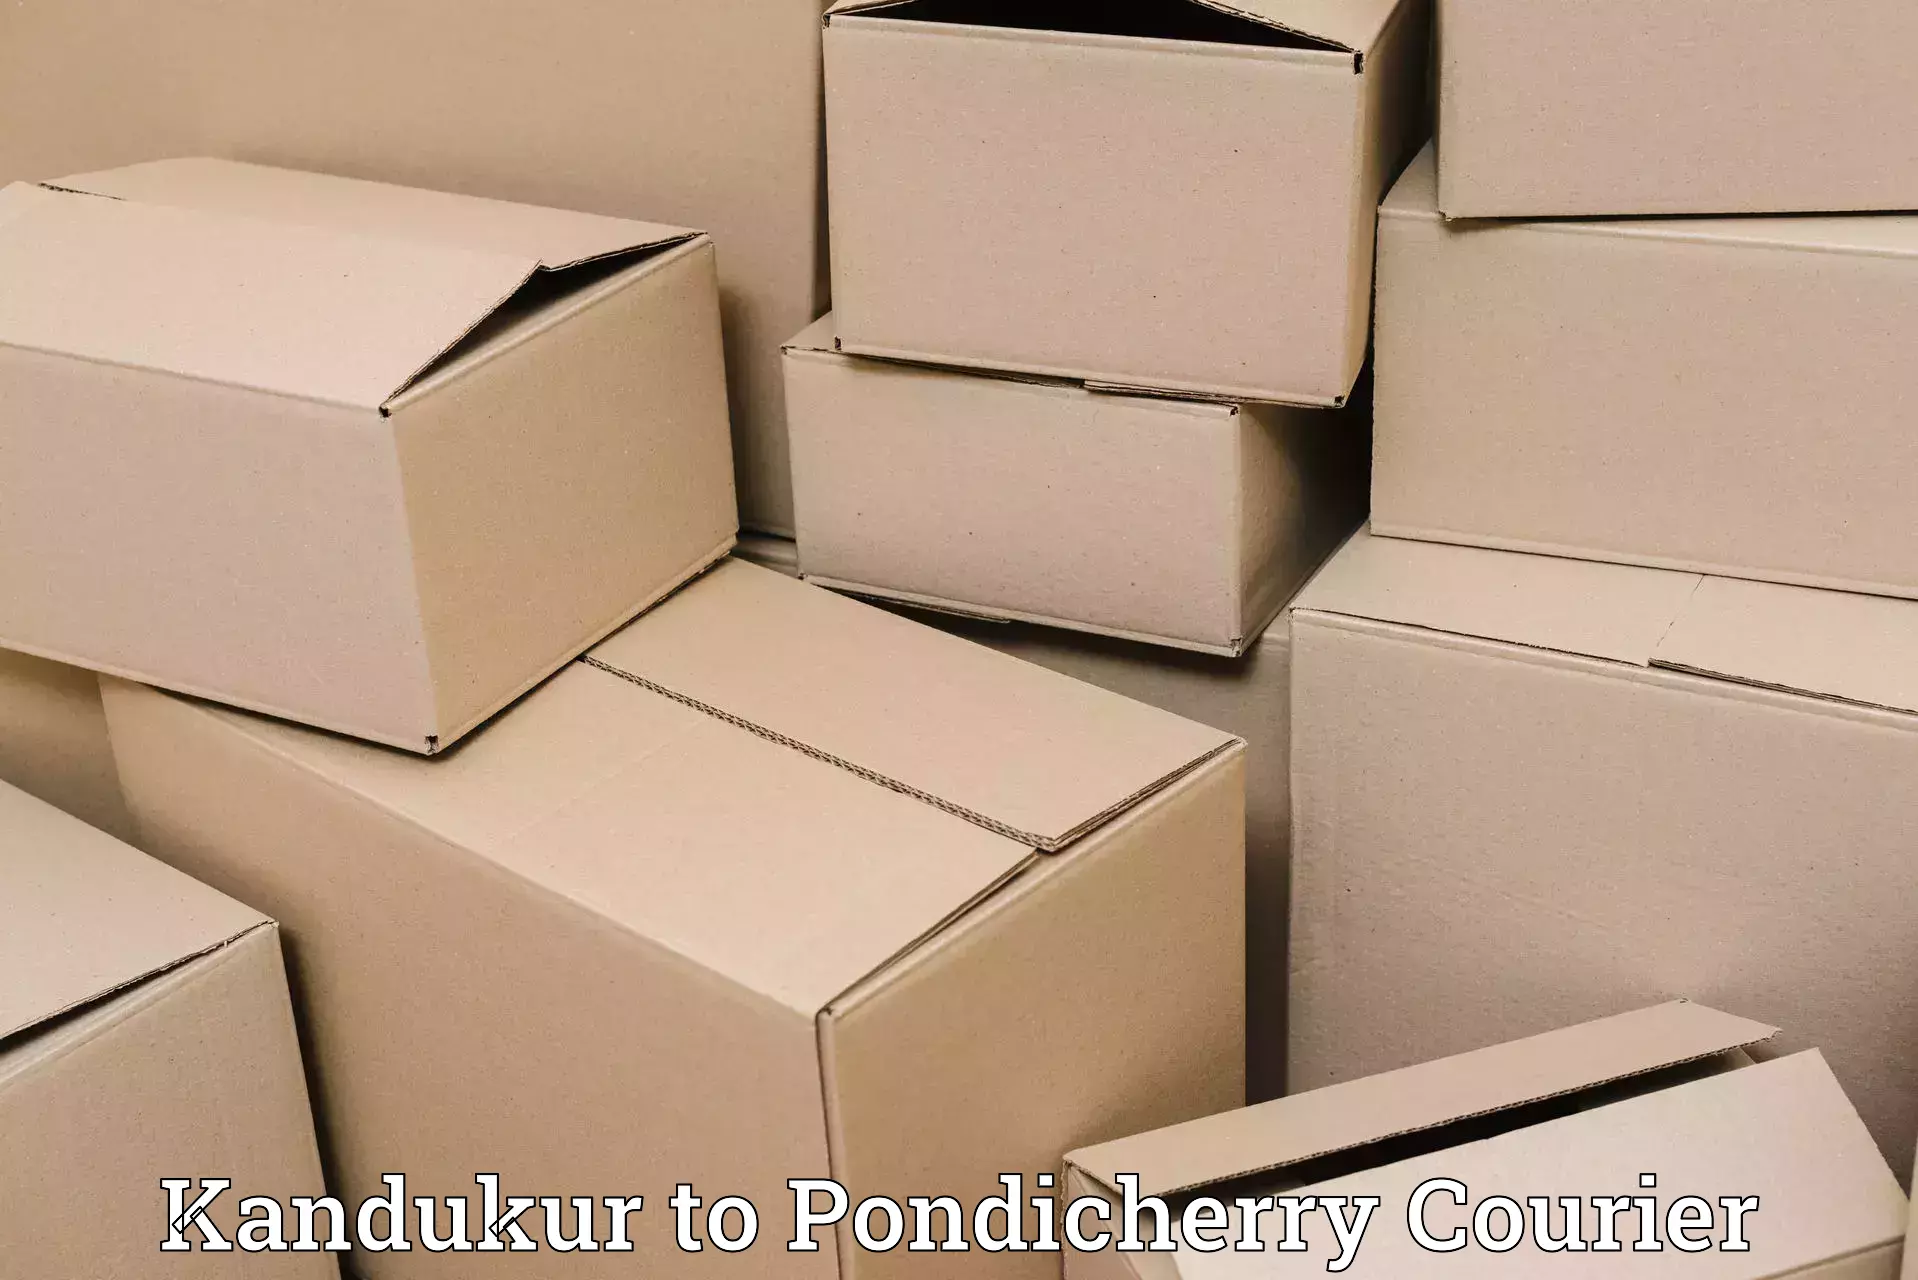 Optimized courier strategies in Kandukur to Metttupalayam